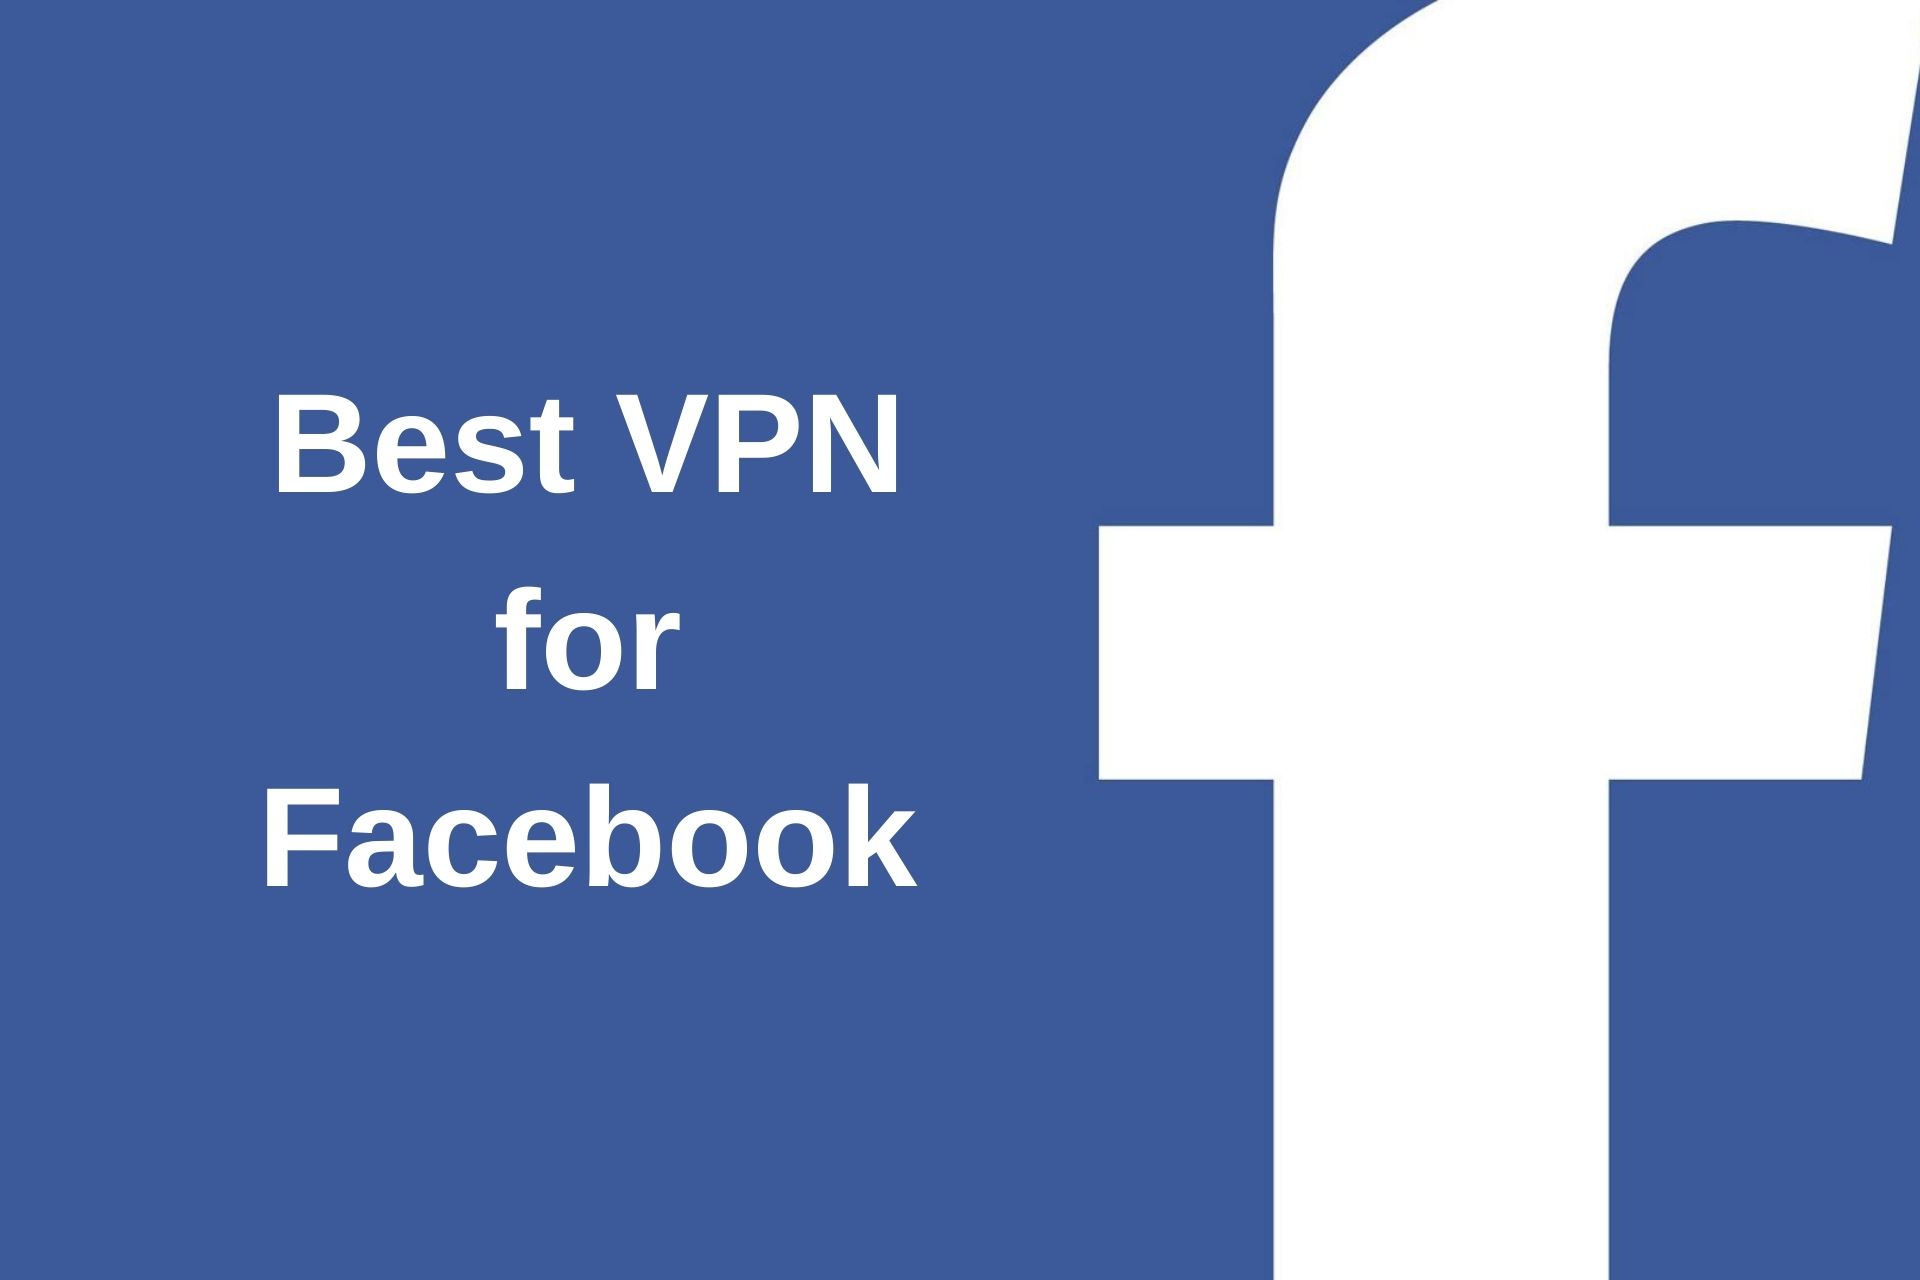 Best-VPN-for-Facebook.jpg